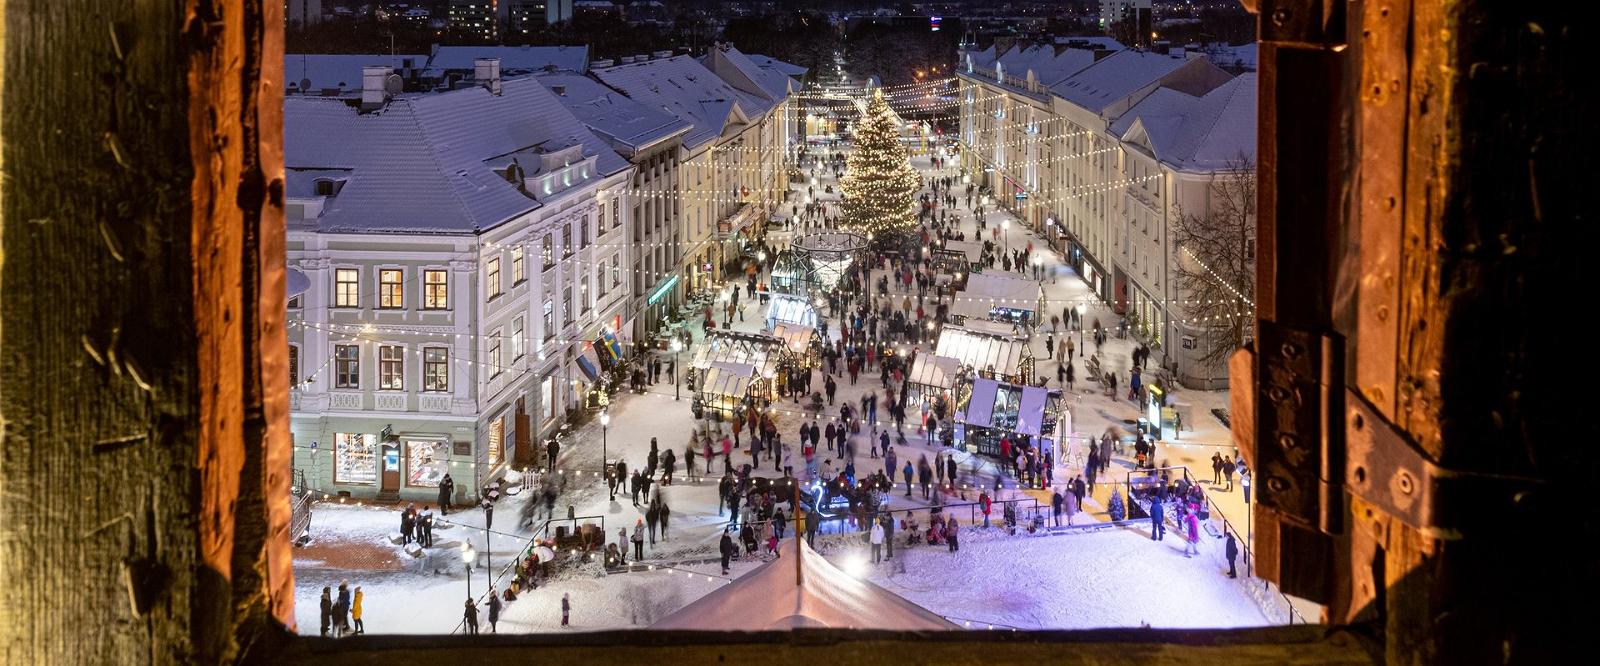 Tartu pilsētas virtuālā tūre: Skats no Rātslaukuma zvanu torņa uz sniegoto Ziemassvētku pilsētu Tartu